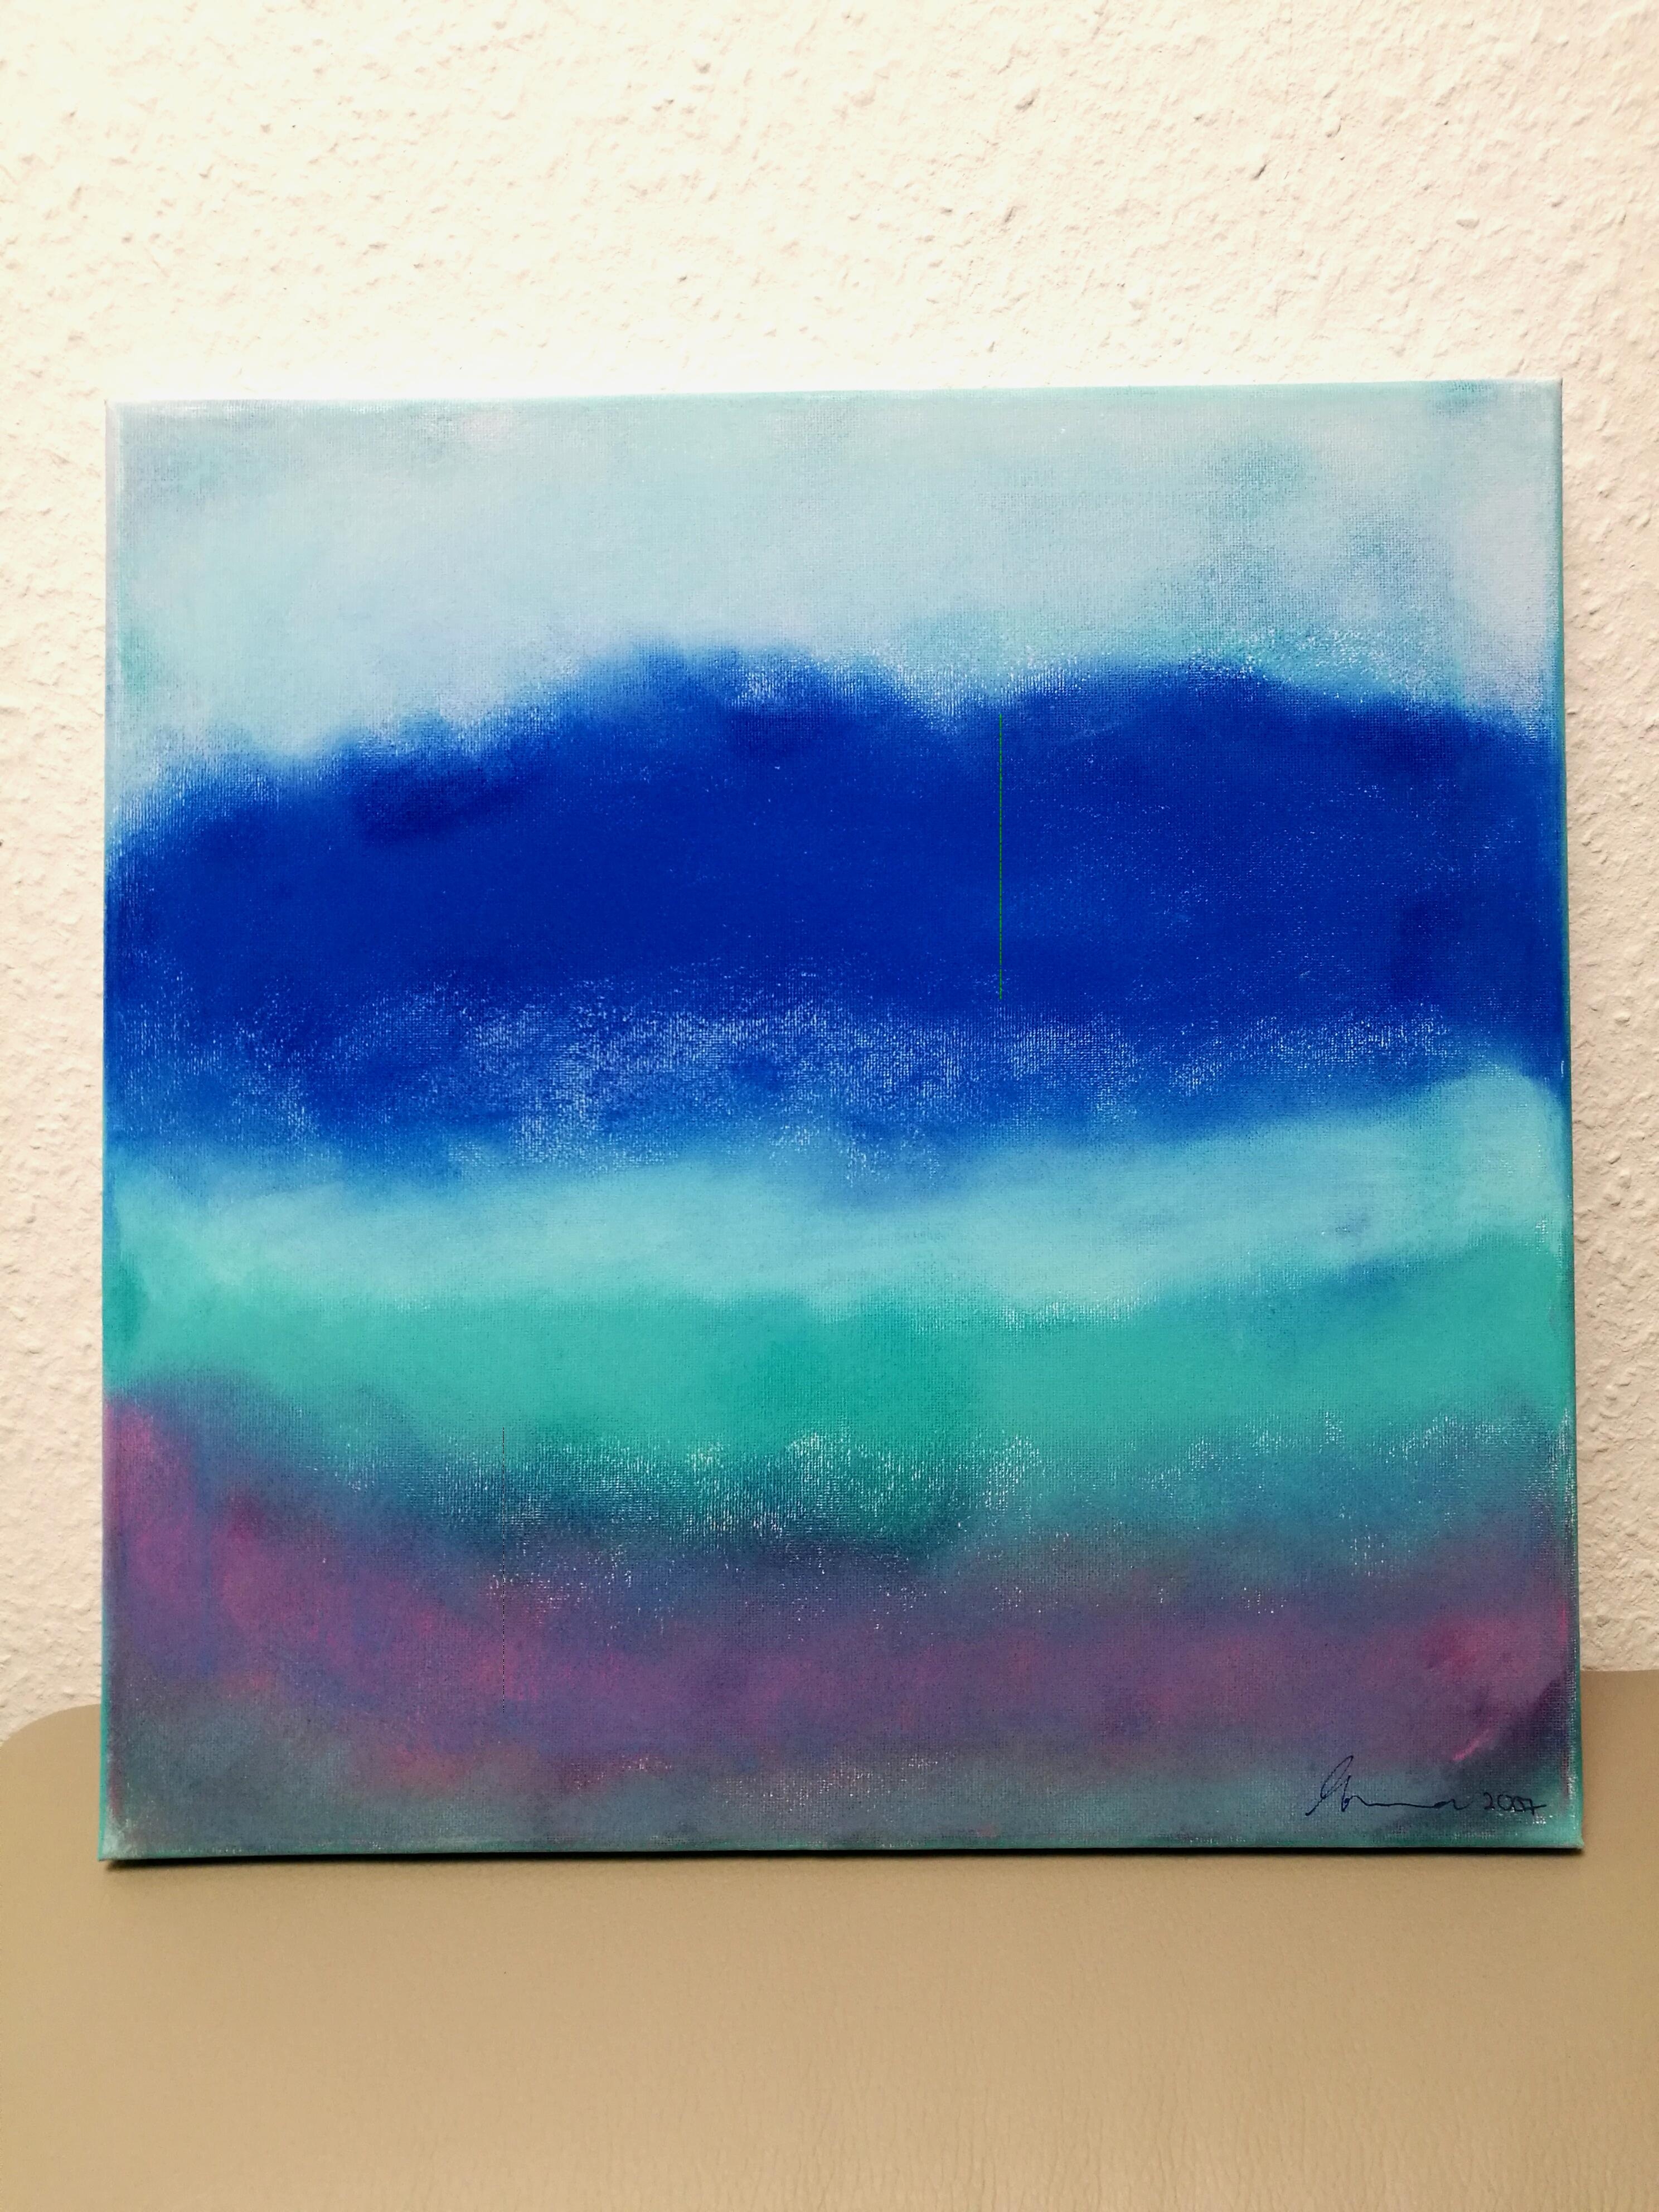 Meine Lieblingskunstwerk.
Meine blaue phase.
#kunst #malen #ich liebe es